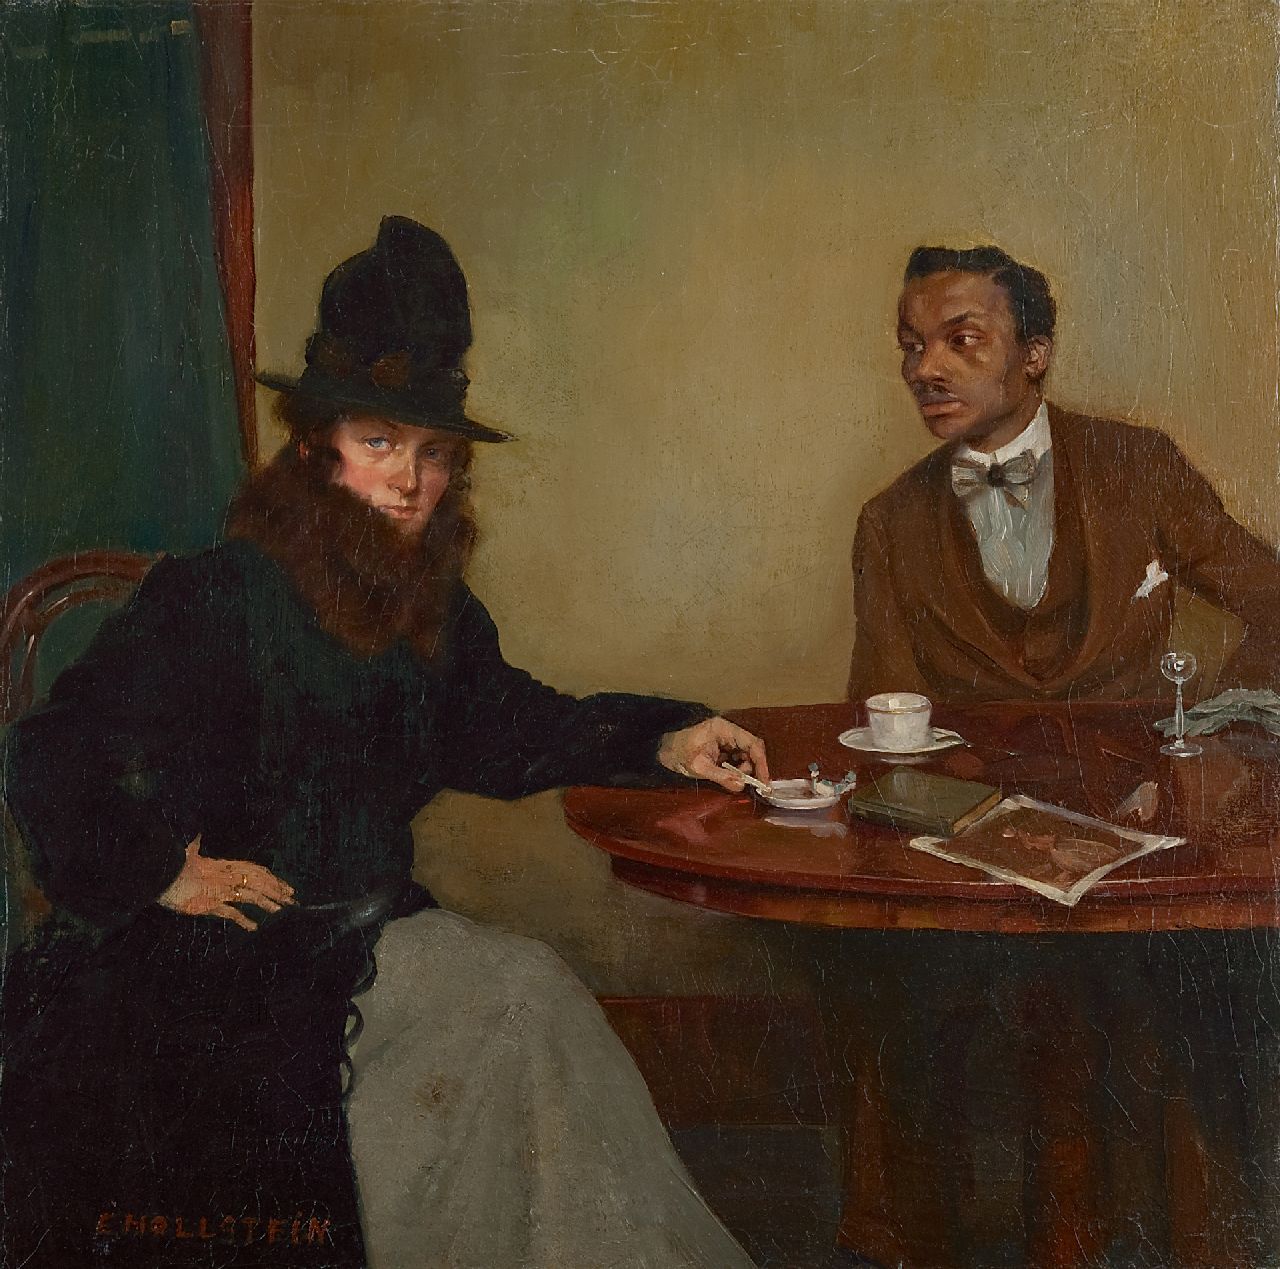 Hollstein E.  | Erwin Hollstein, Café, Paris, Öl auf Leinwand 51,8 x 51,1 cm, Unterzeichnet l.u.